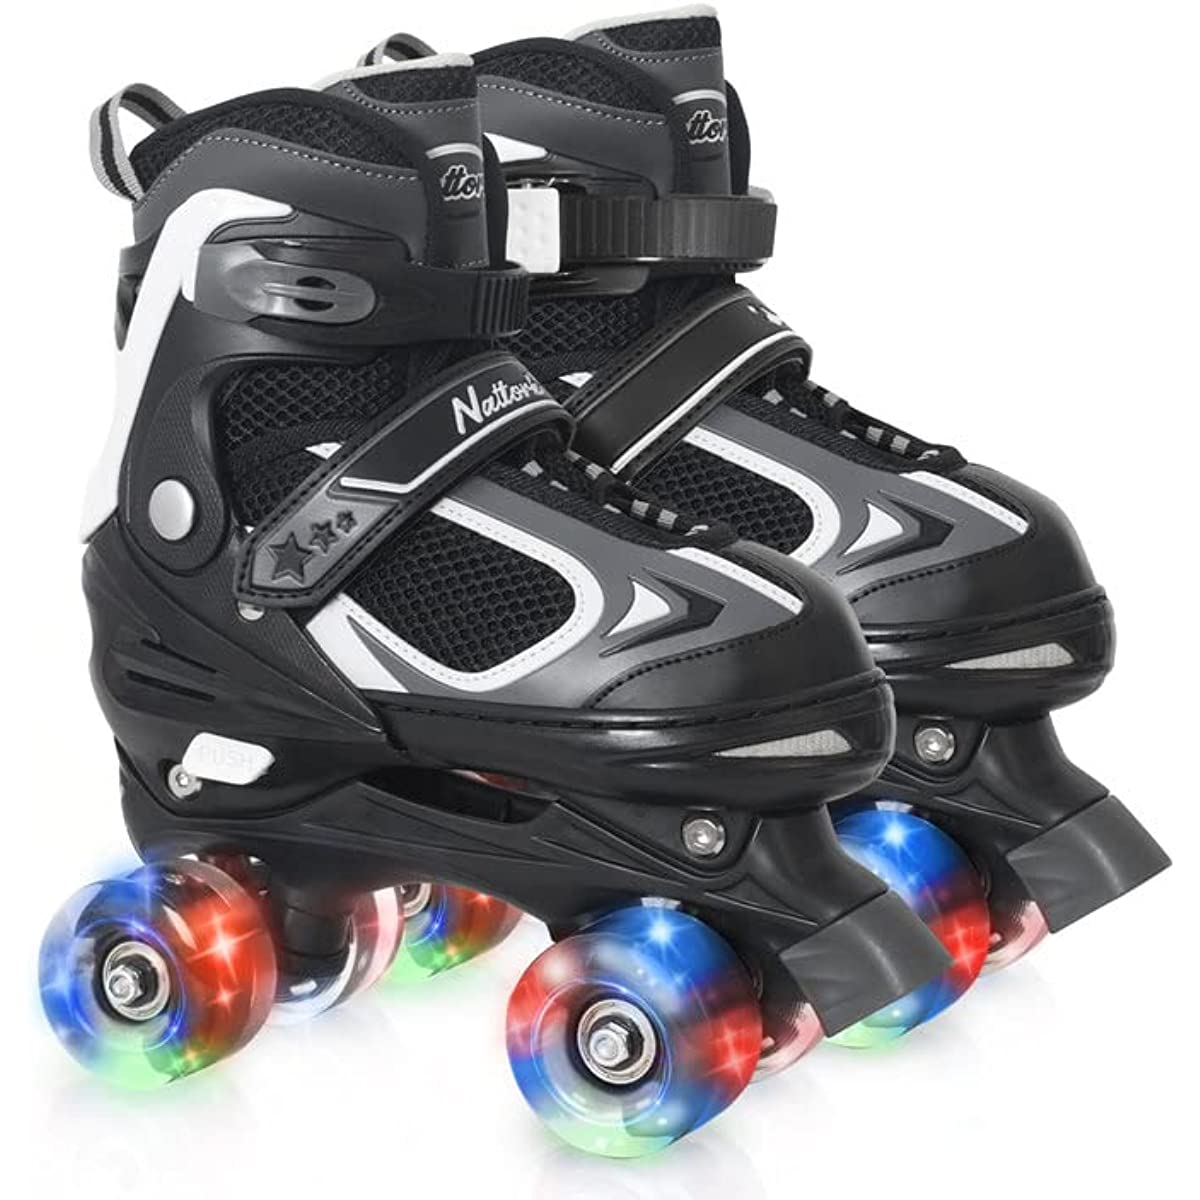 Nattork Adjustable Roller Skates for Kids - Black